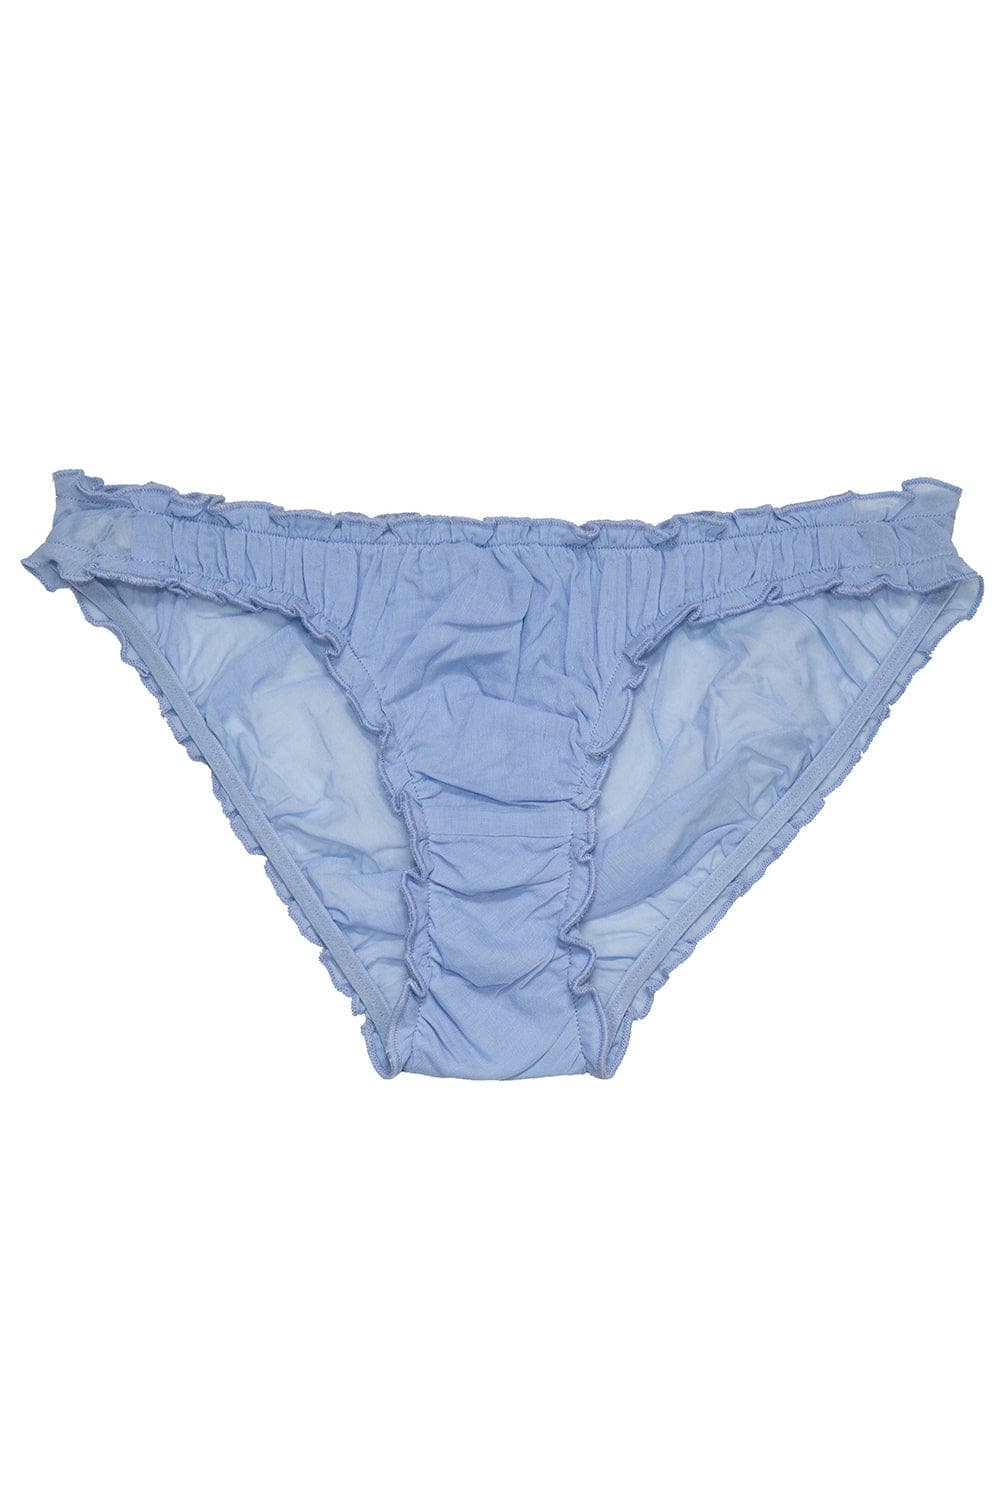 Sky blue fancy panties 100% organic cotton- Germaine des prés –  germainedespres